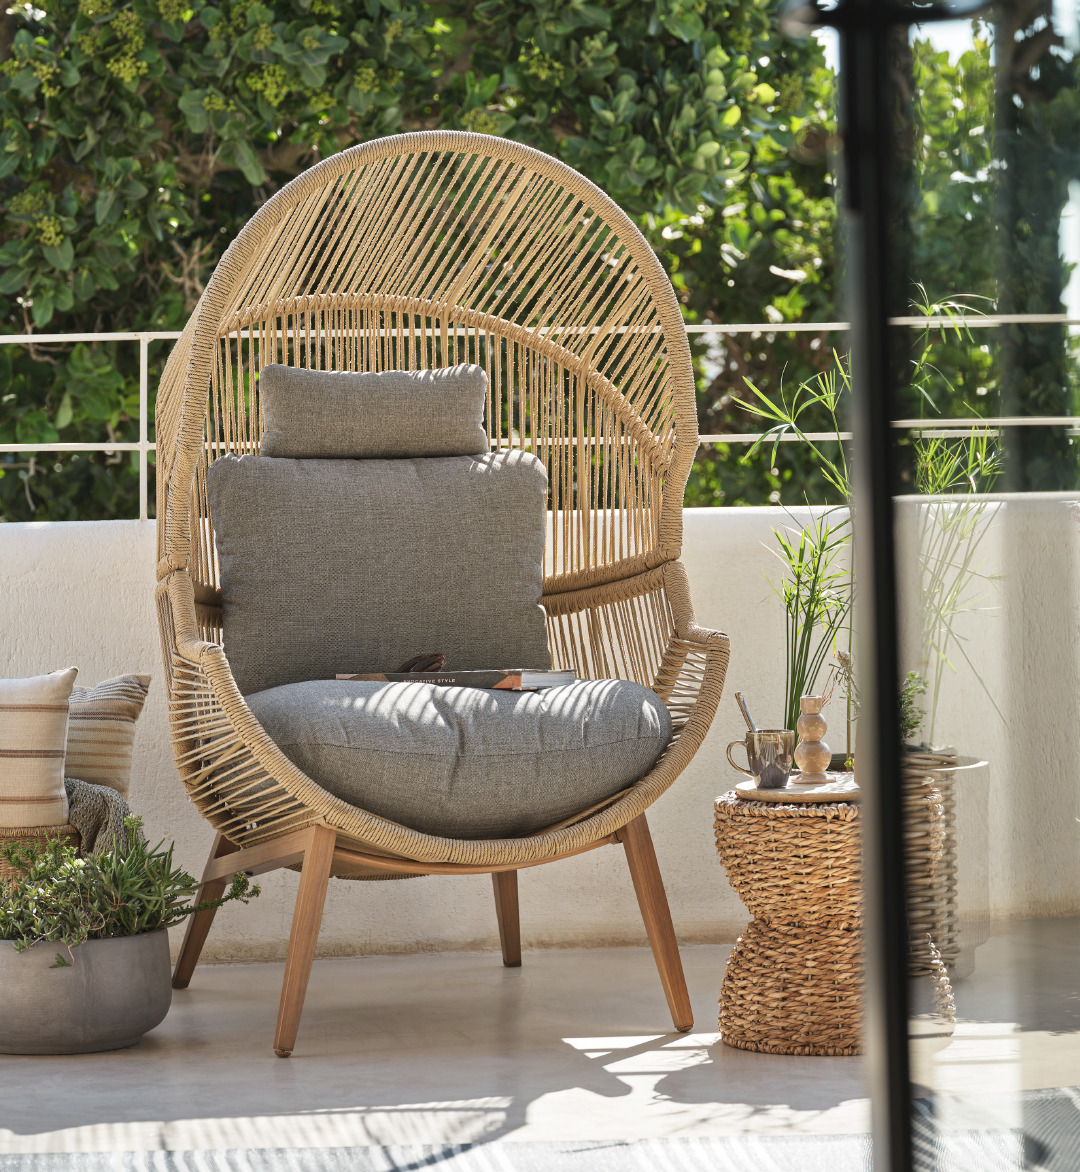 Fauteuil lounge de jardin avec coussins sur terrasse